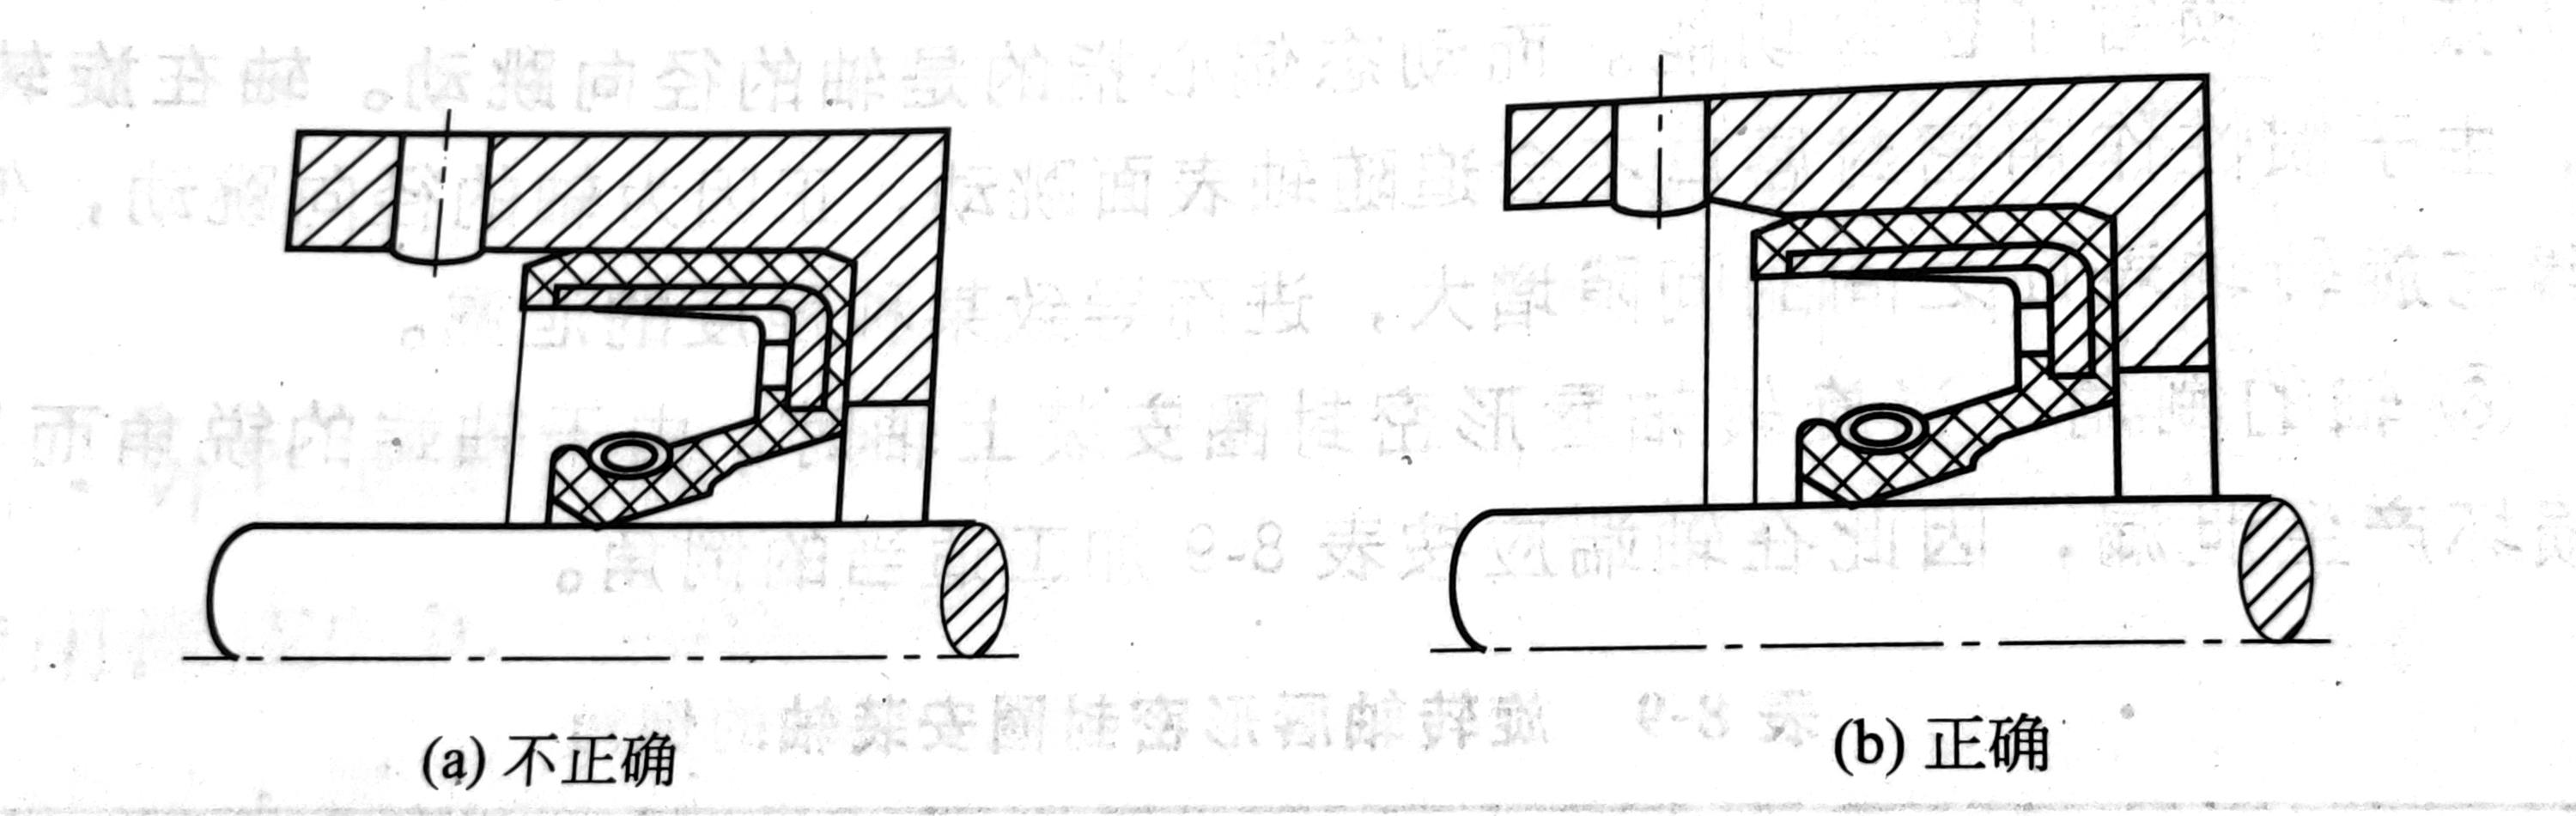 骨架油封装配要领以及示希图-惠诺密封圈(图2)